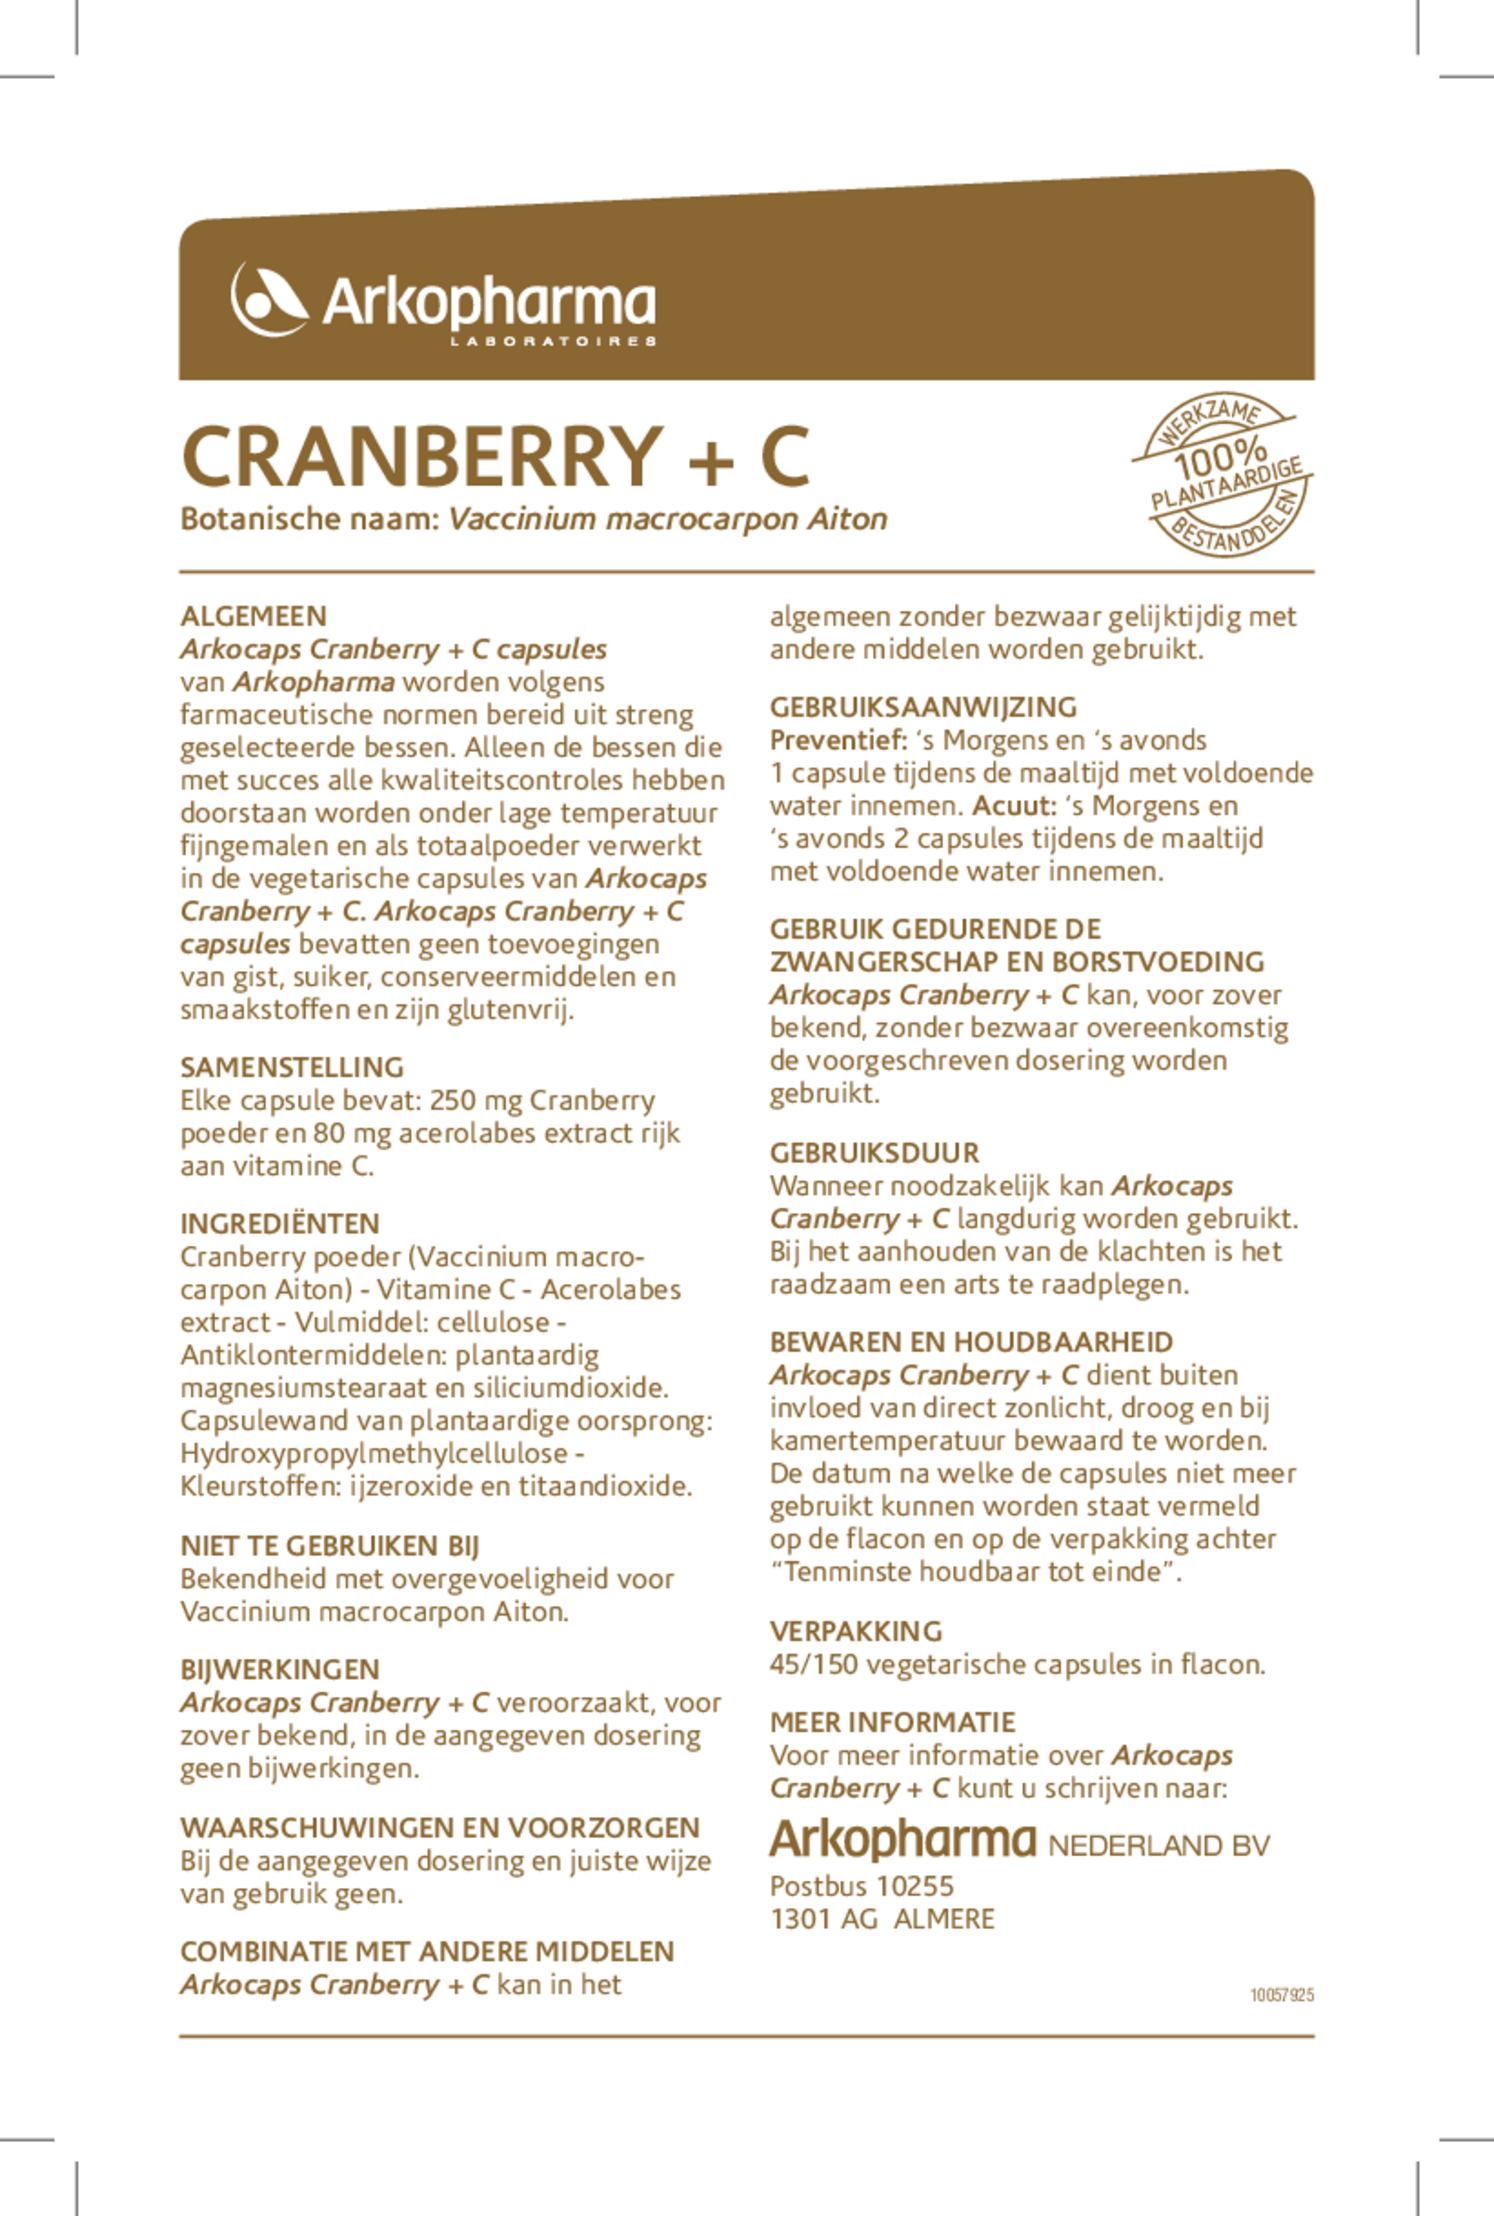 Cranberry + C Capsules afbeelding van document #1, gebruiksaanwijzing